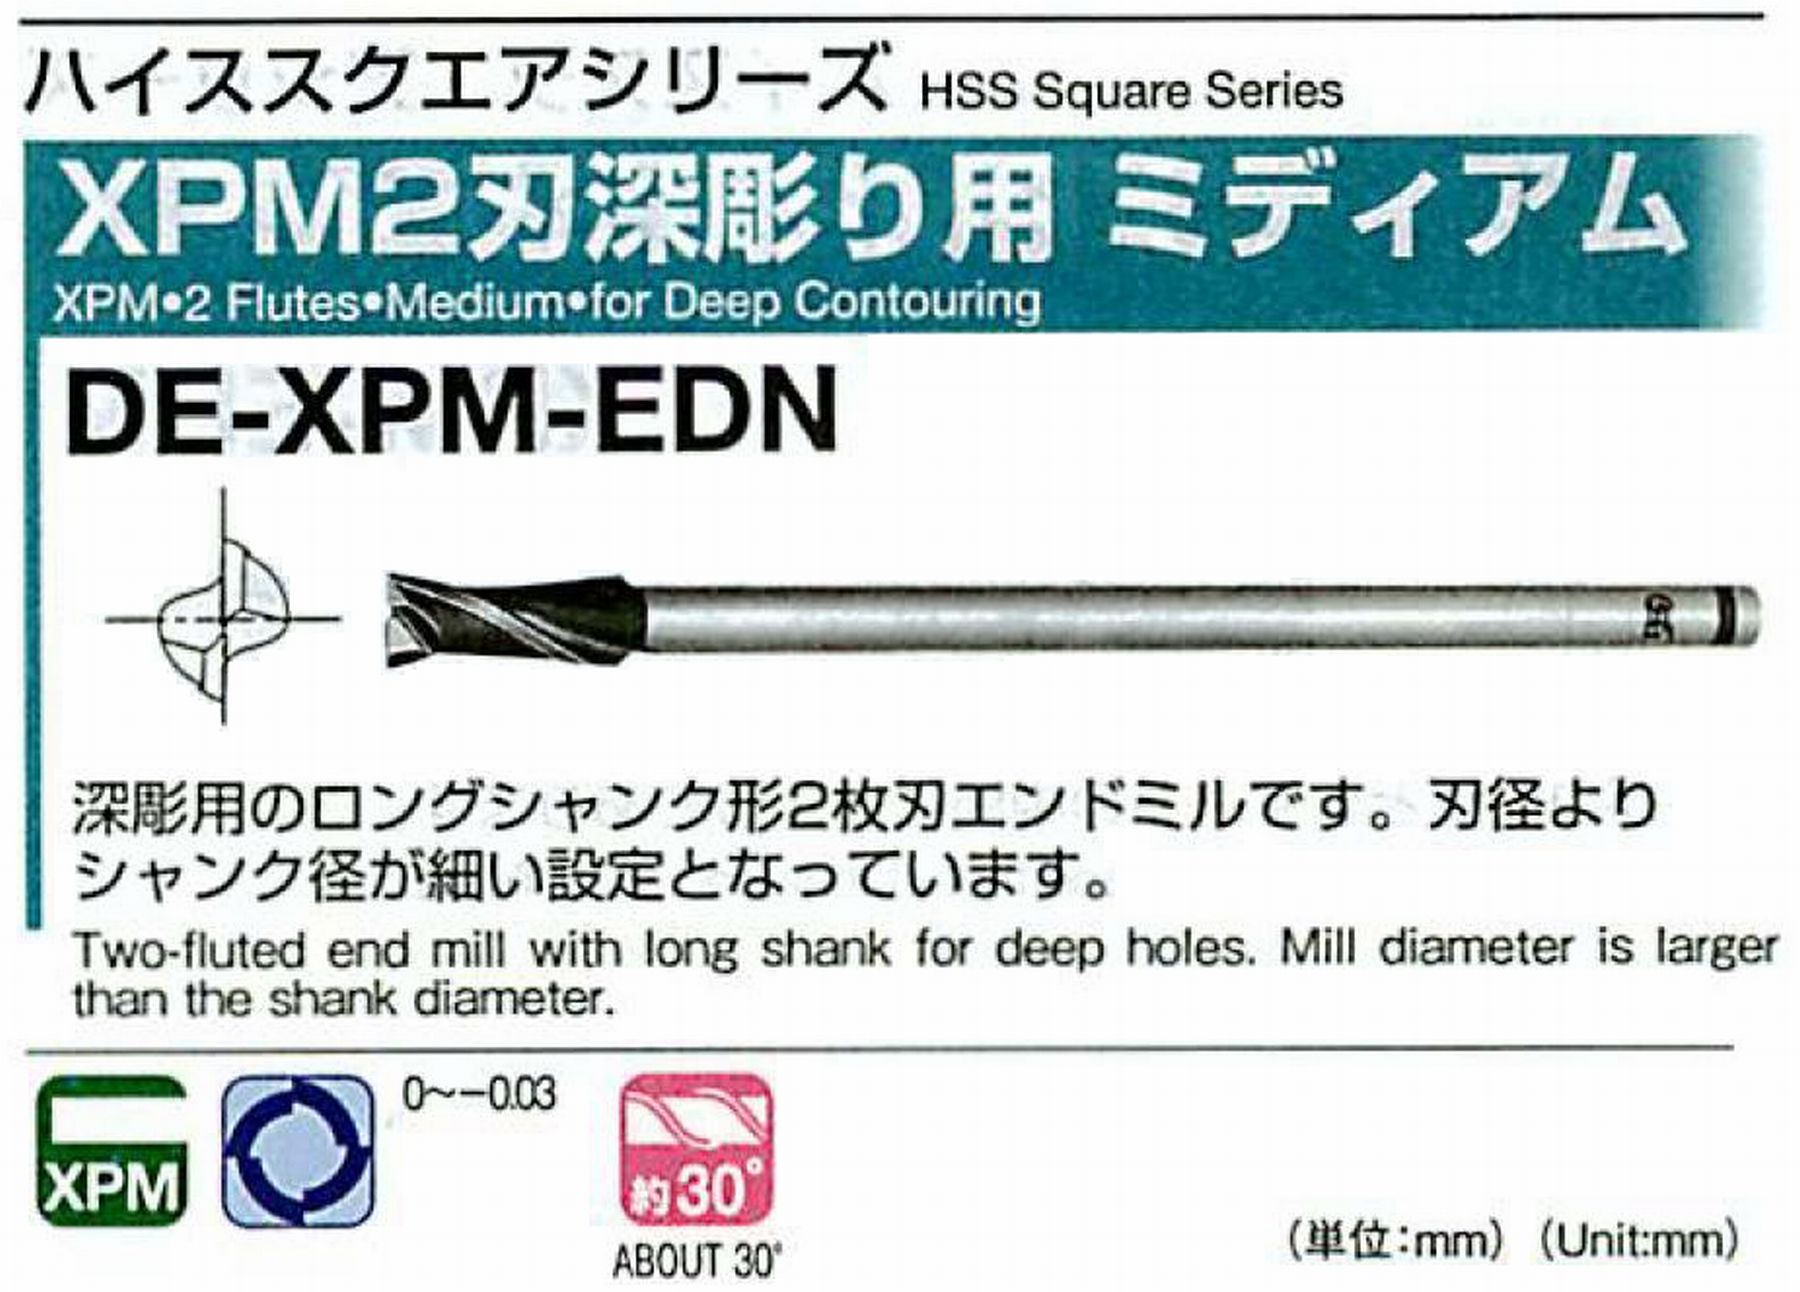 オーエスジー/OSG XPM2刃深彫り用 ミディアム DE-XPM-EDN 外径13 全長150 刃長35 シャンク径12mm